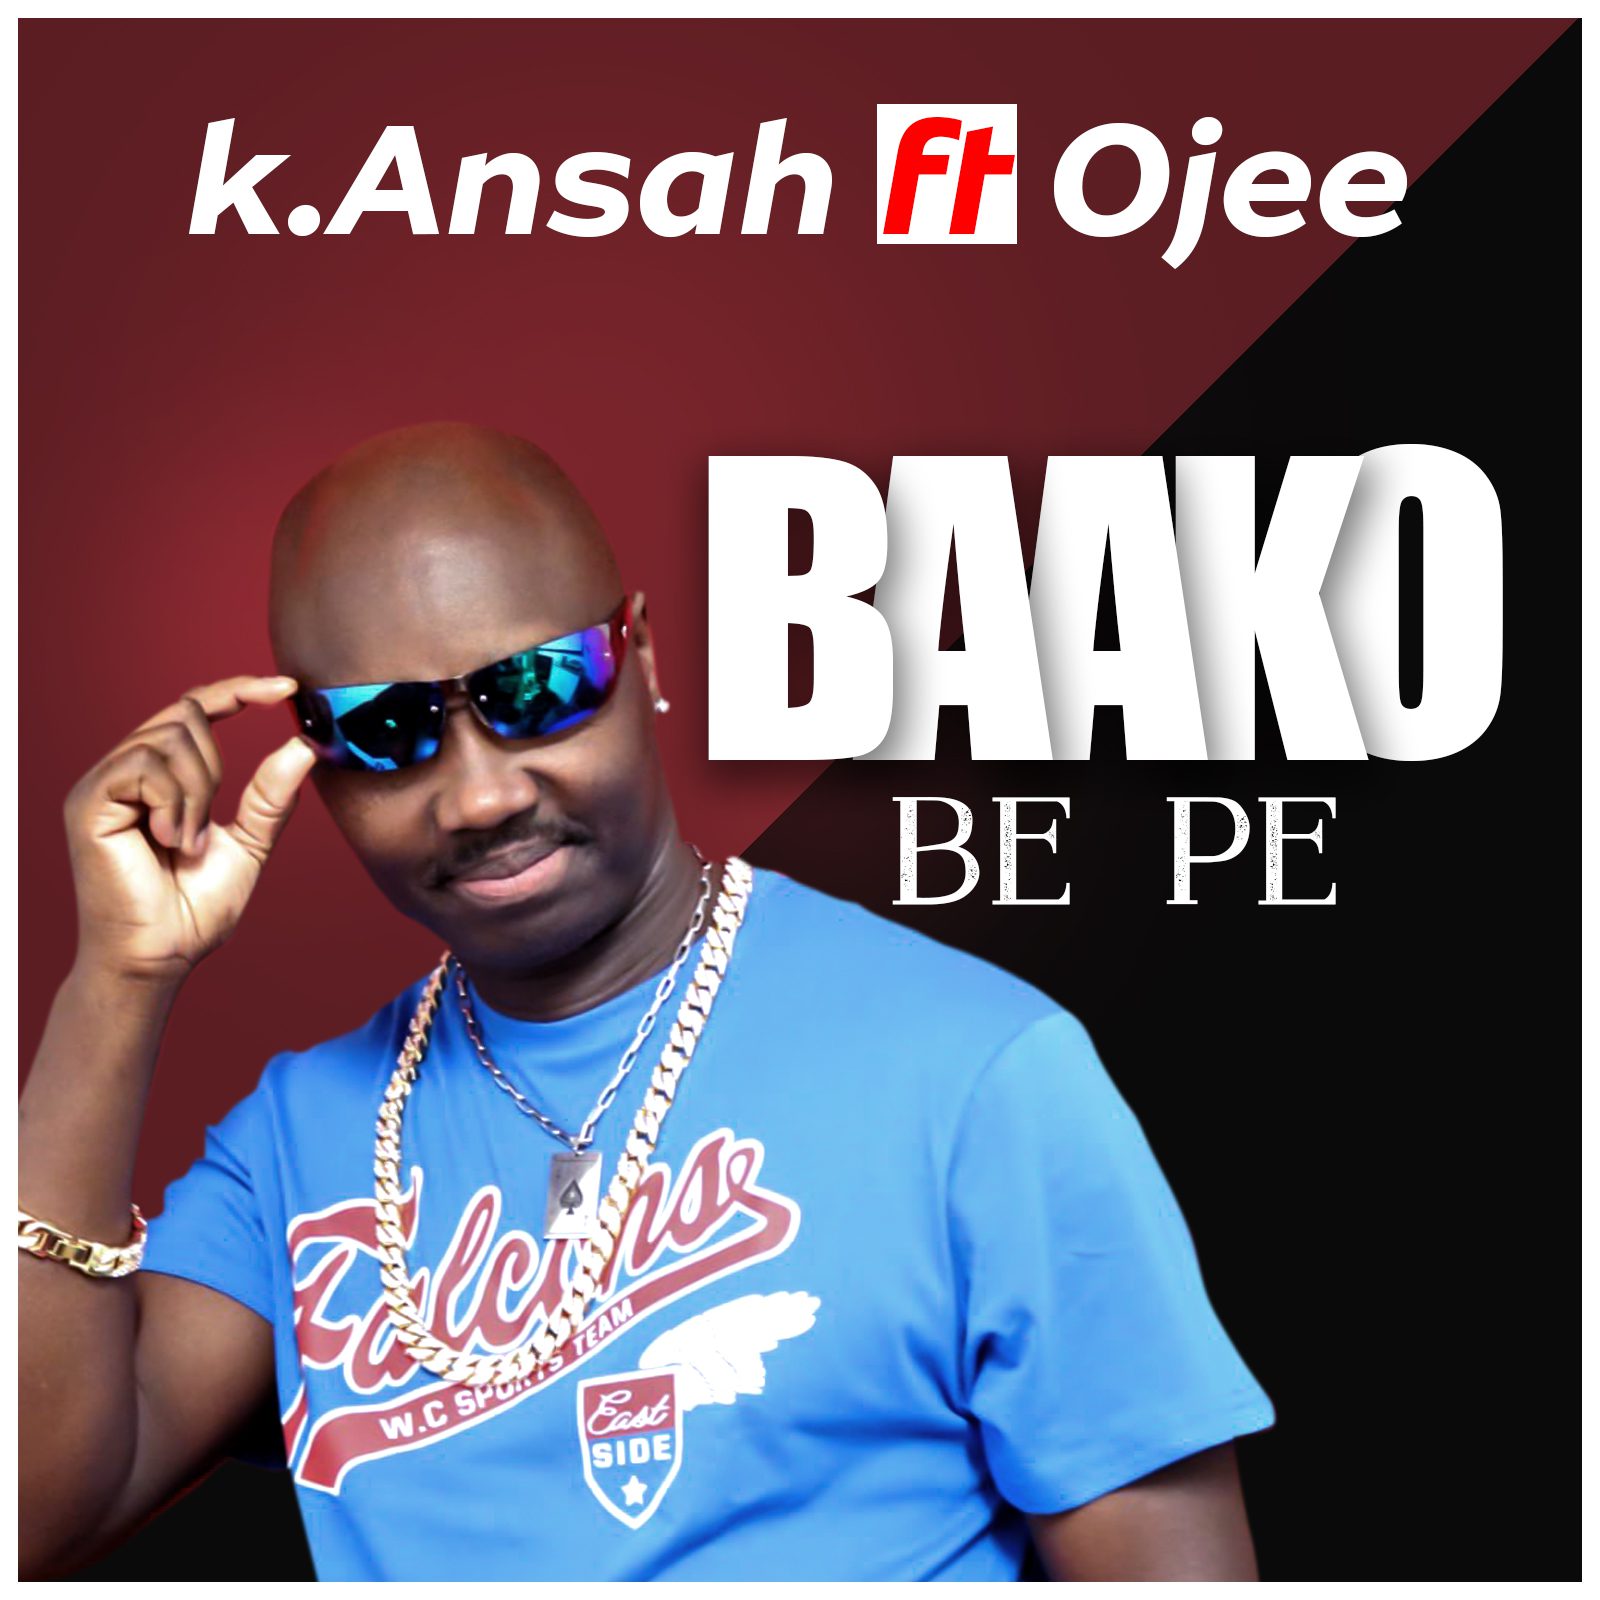 K.Ansah ft. Ojee – Baako Be Pe